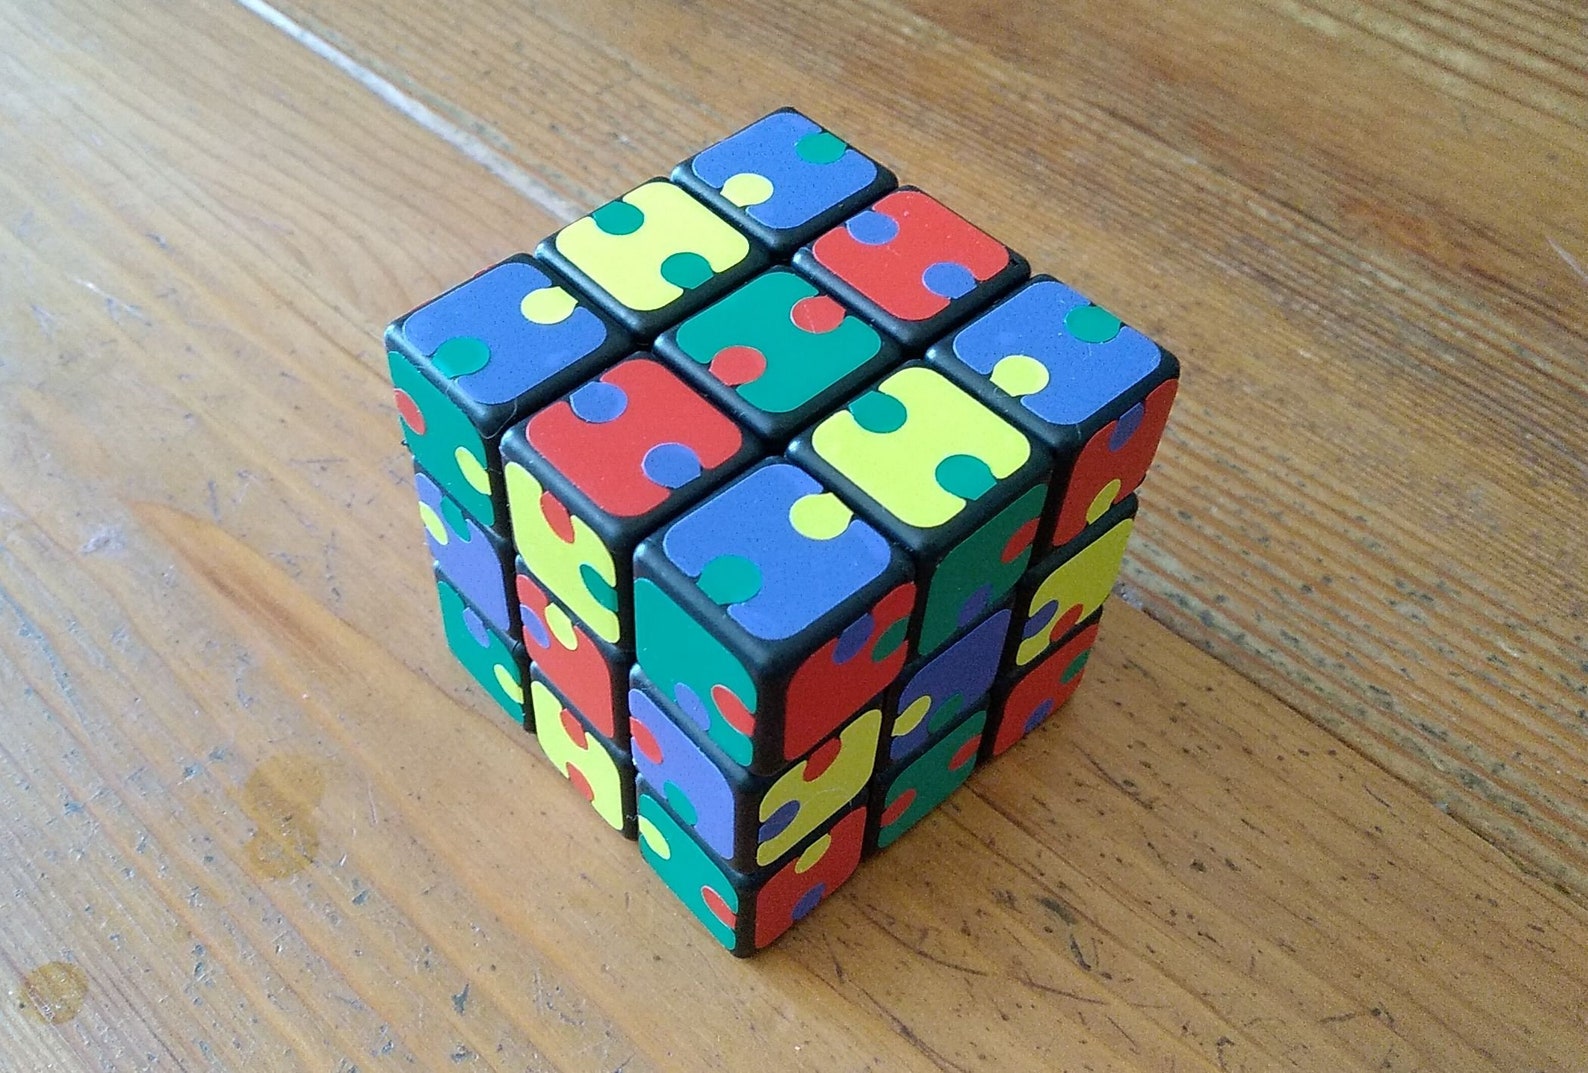 Cube видео. Кубоид кубик Рубика. Видео кубик. Rubik's Cube Sticker.